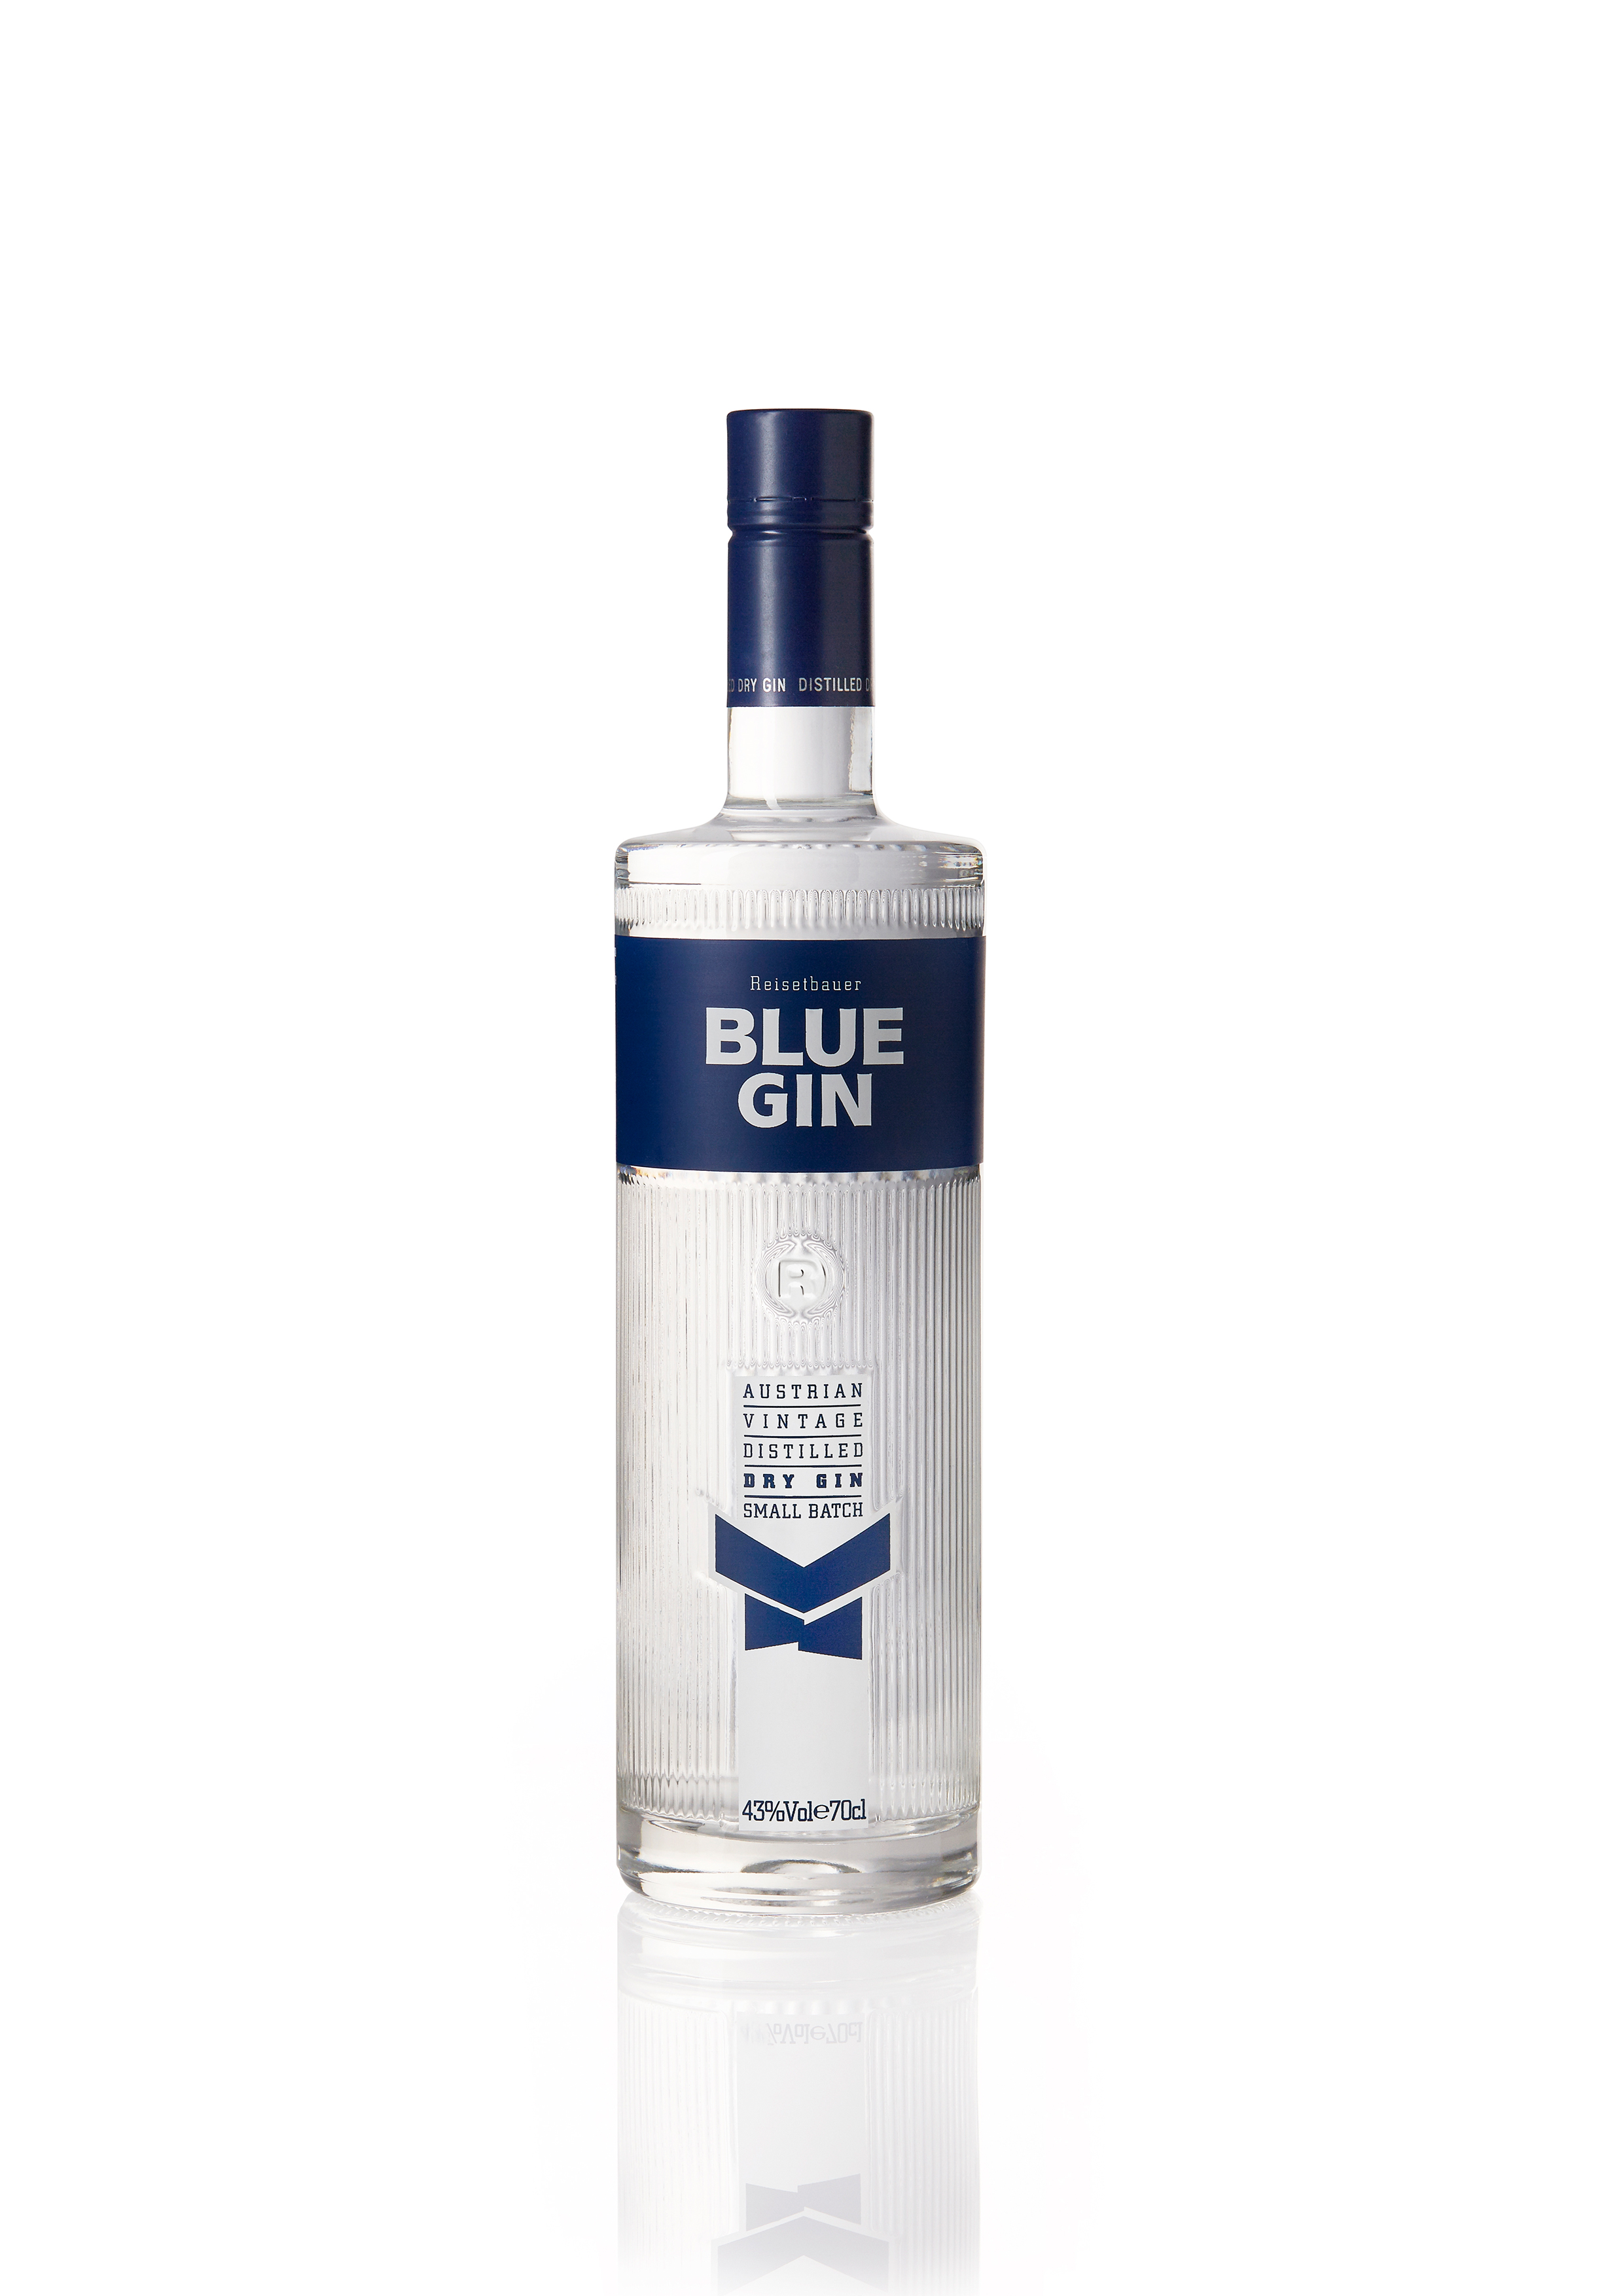 Blue Gin 0,70 Reisetbauer 43°